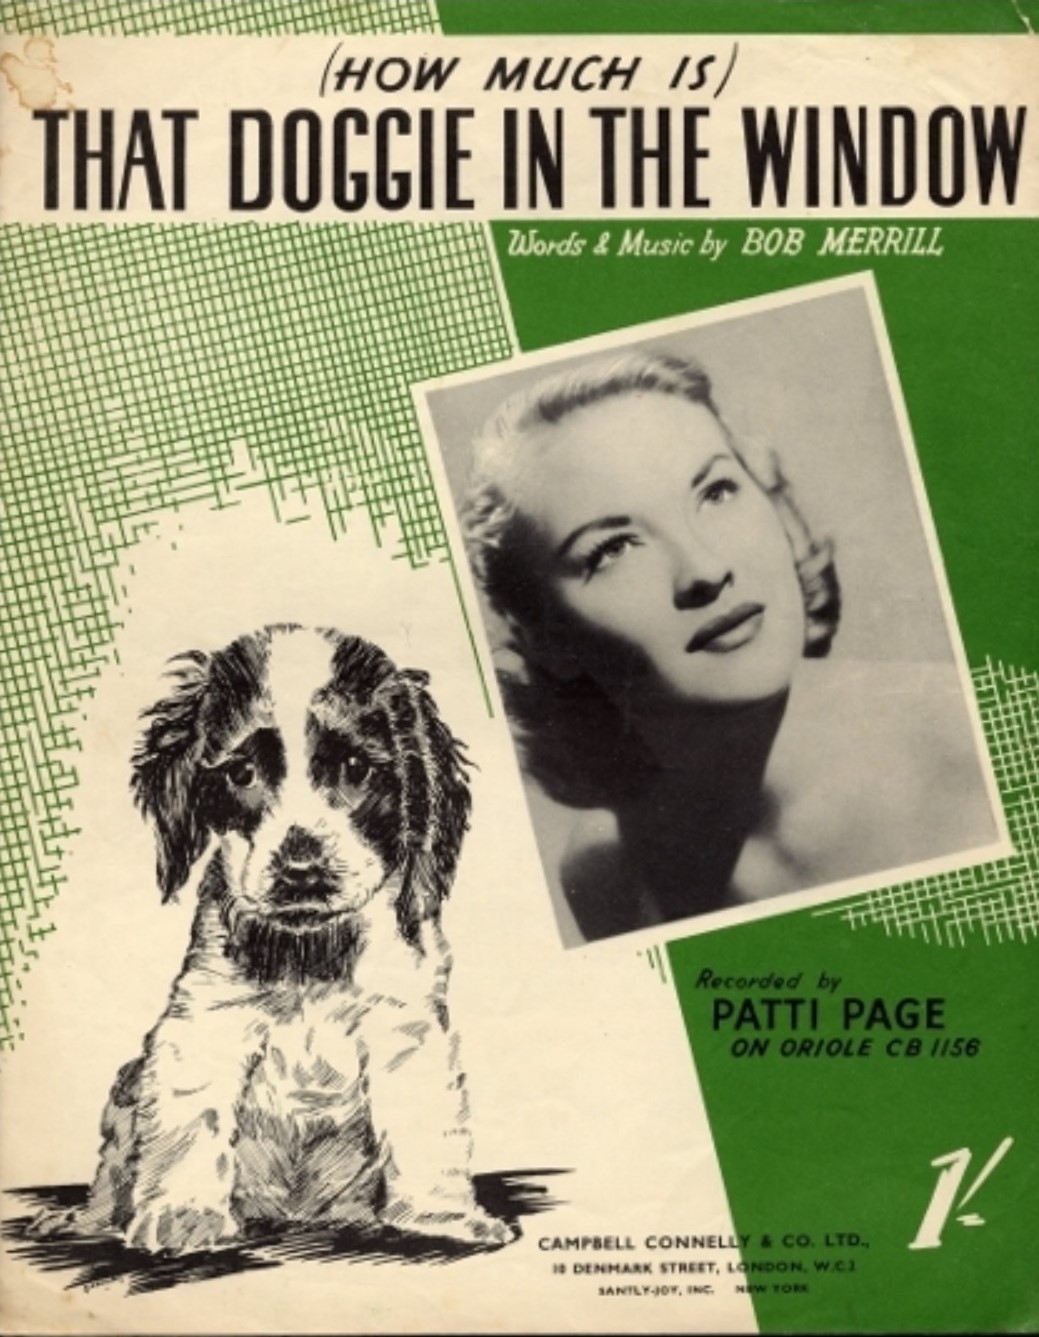  페티 페이지 <(How much is that doggie in the window?> 싱글 커버.